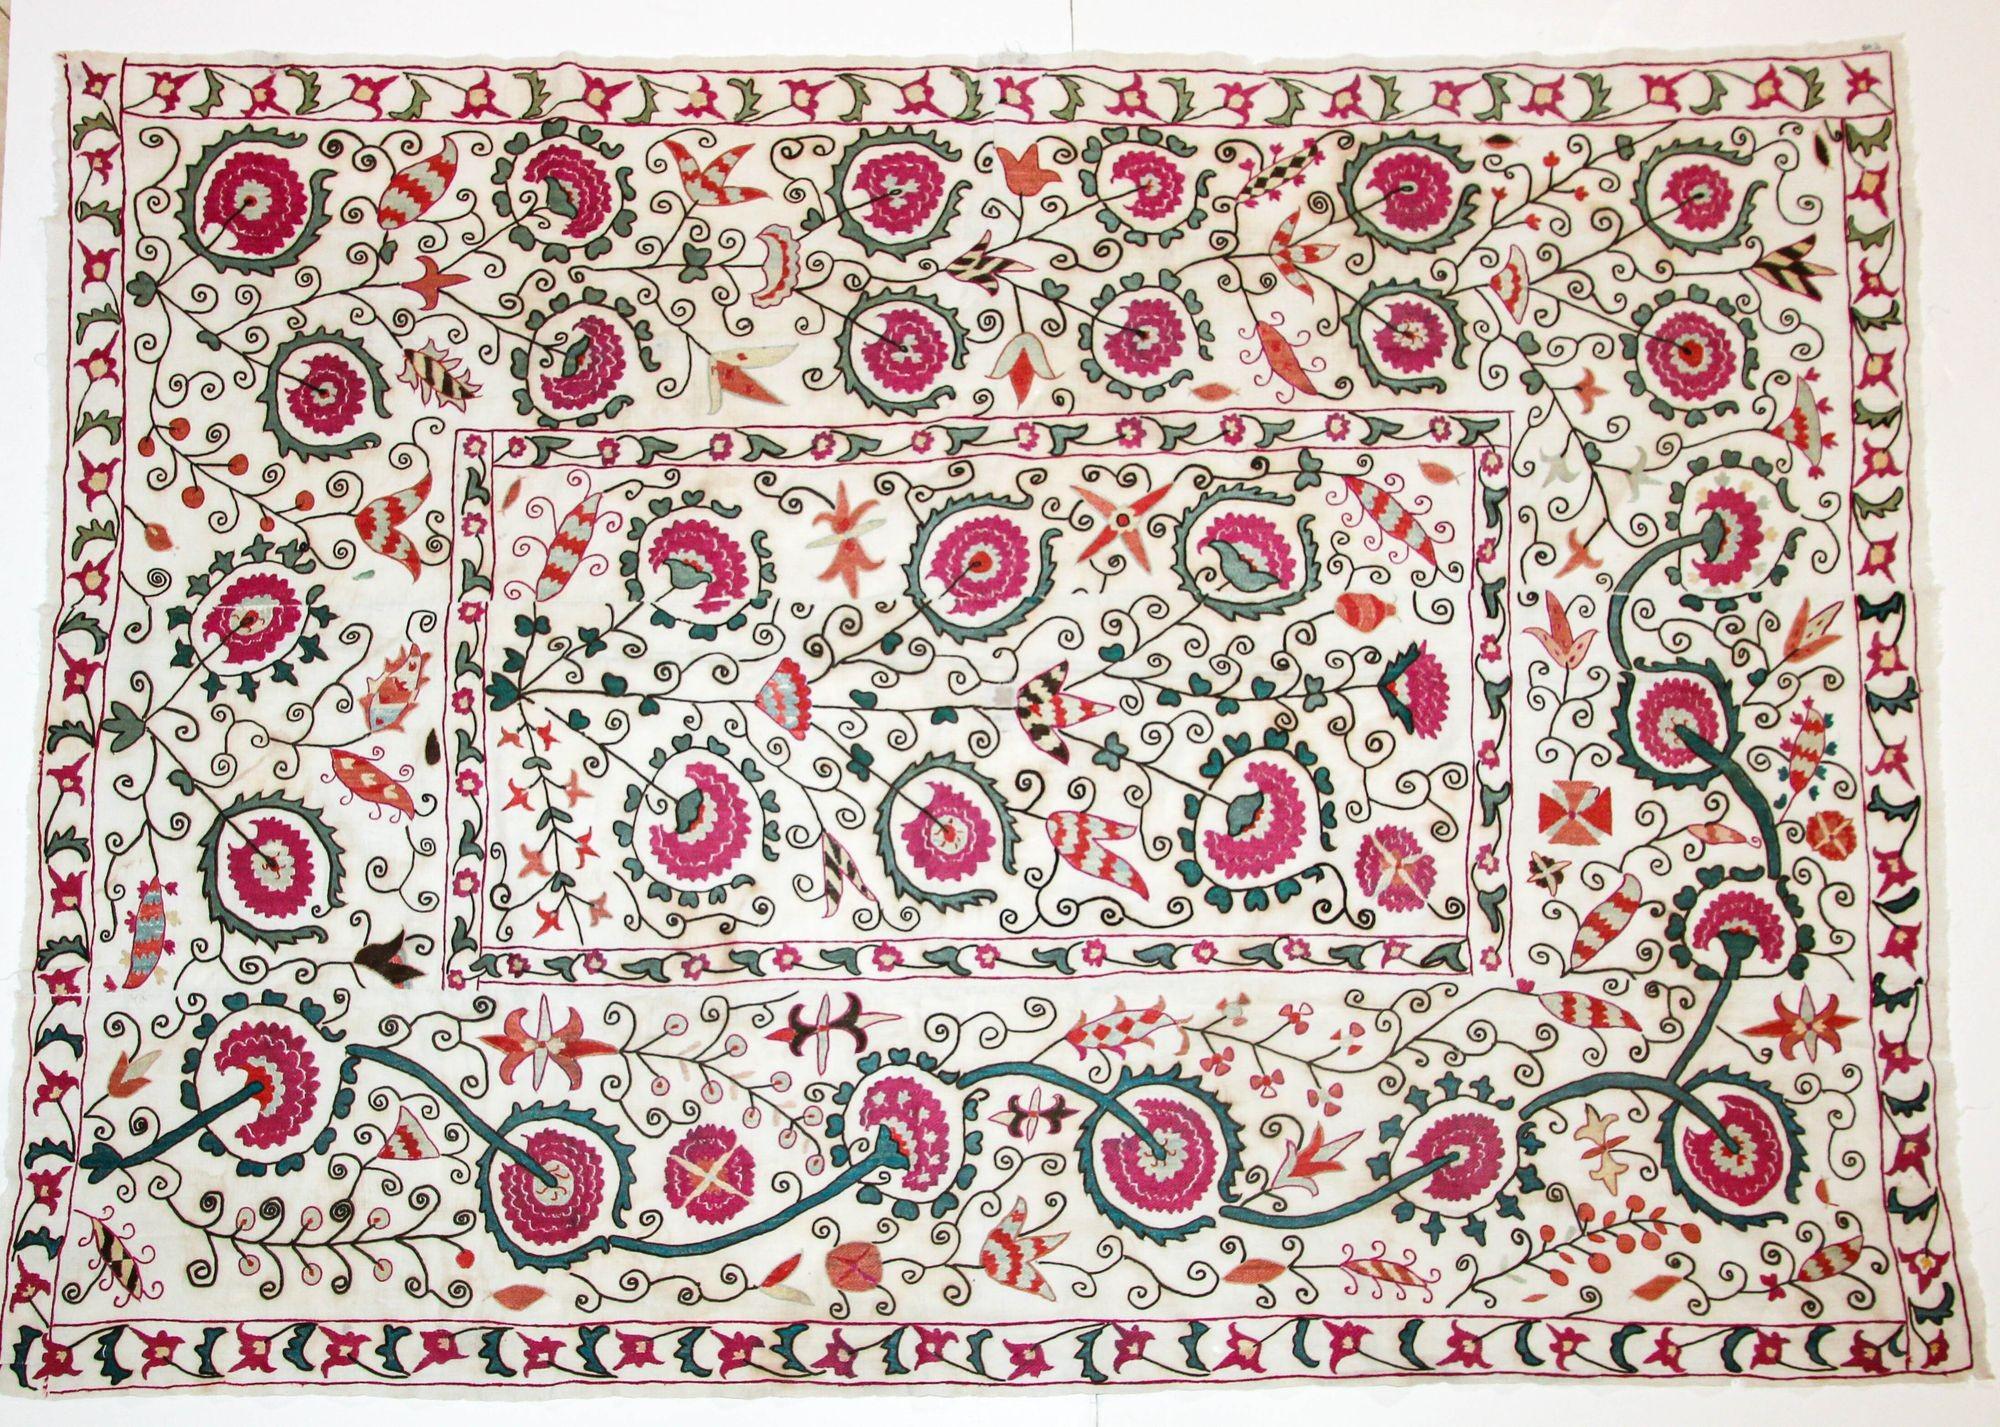 Fabelhafte antike Suzani aus Buchara (Usbekistan) aus dem 19. Jahrhundert, bestickt mit schwingenden floralen Zweigen und Blumen.
Museum Qualität Sammler antike Hand bestickt islamische Kunst Textil genannt Susani oder Suzani.
Es wurden sehr feine,